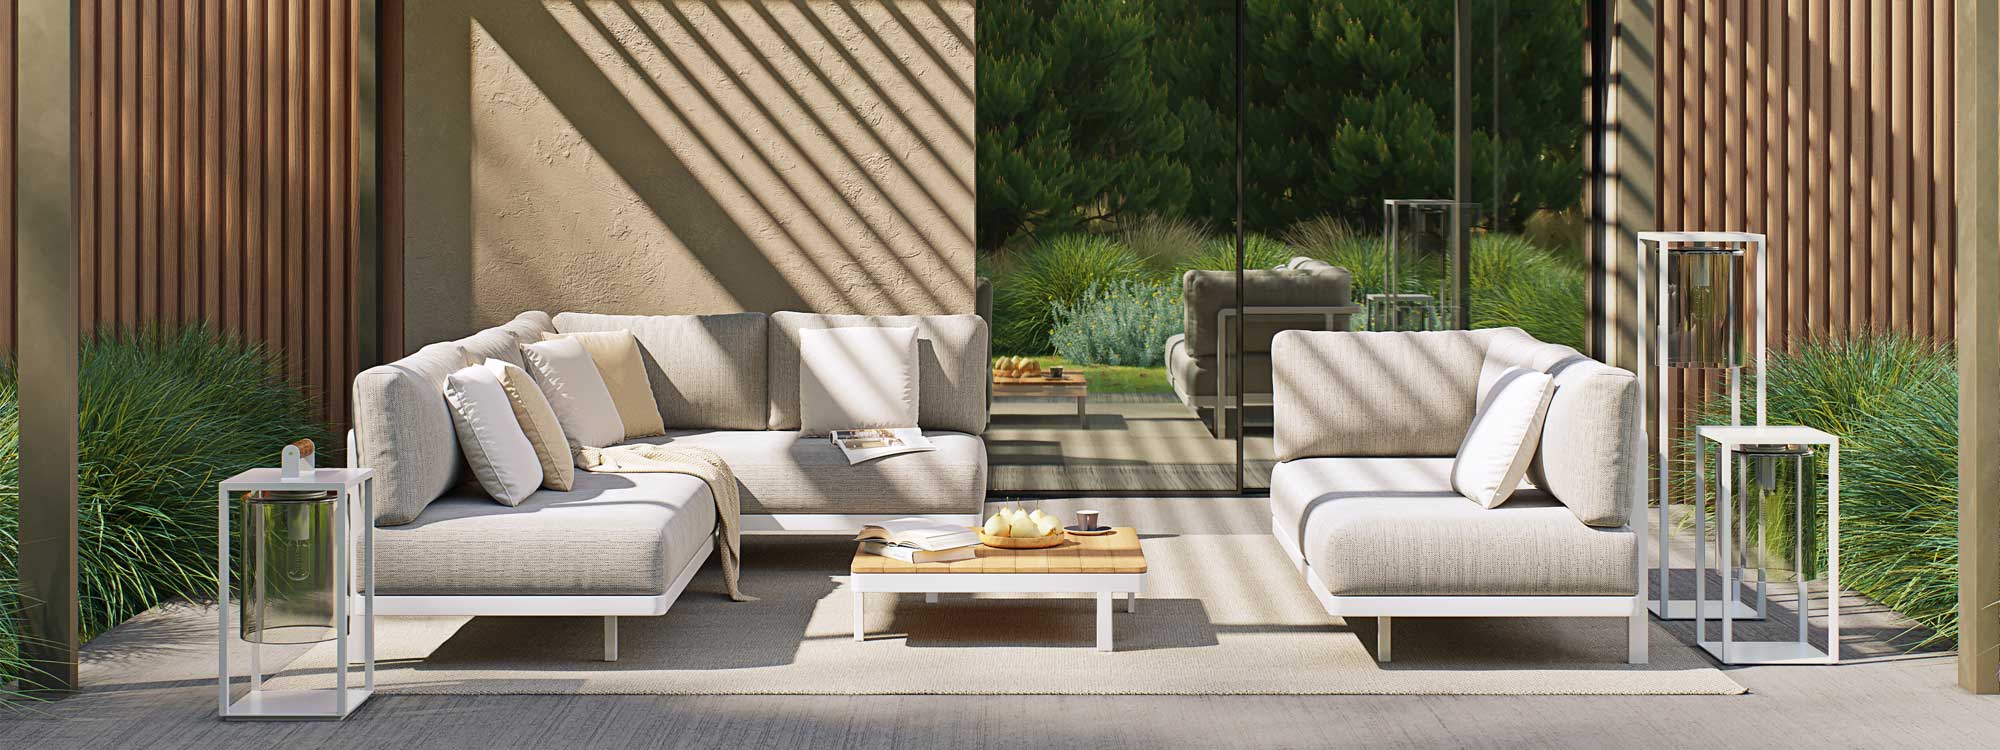 Alura modern modular outdoor sofa is a high quality garden sofa in luxury exterior sofa materials by Royal Botania garden furniture company